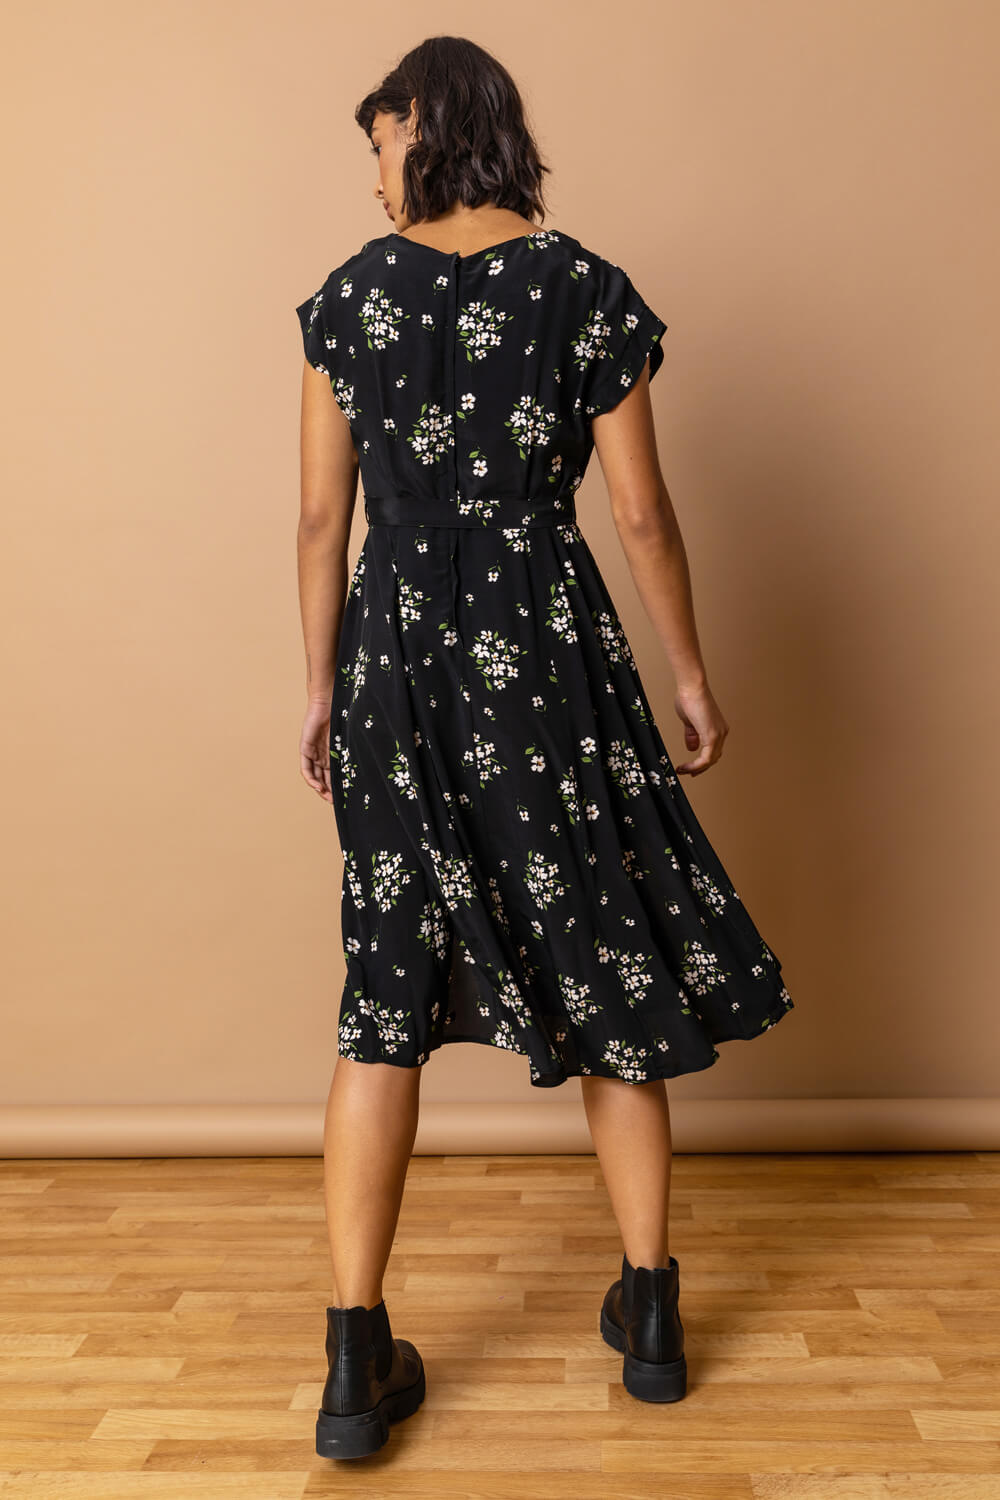 Black Floral Print Belted A-Line Dress, Image 2 of 3